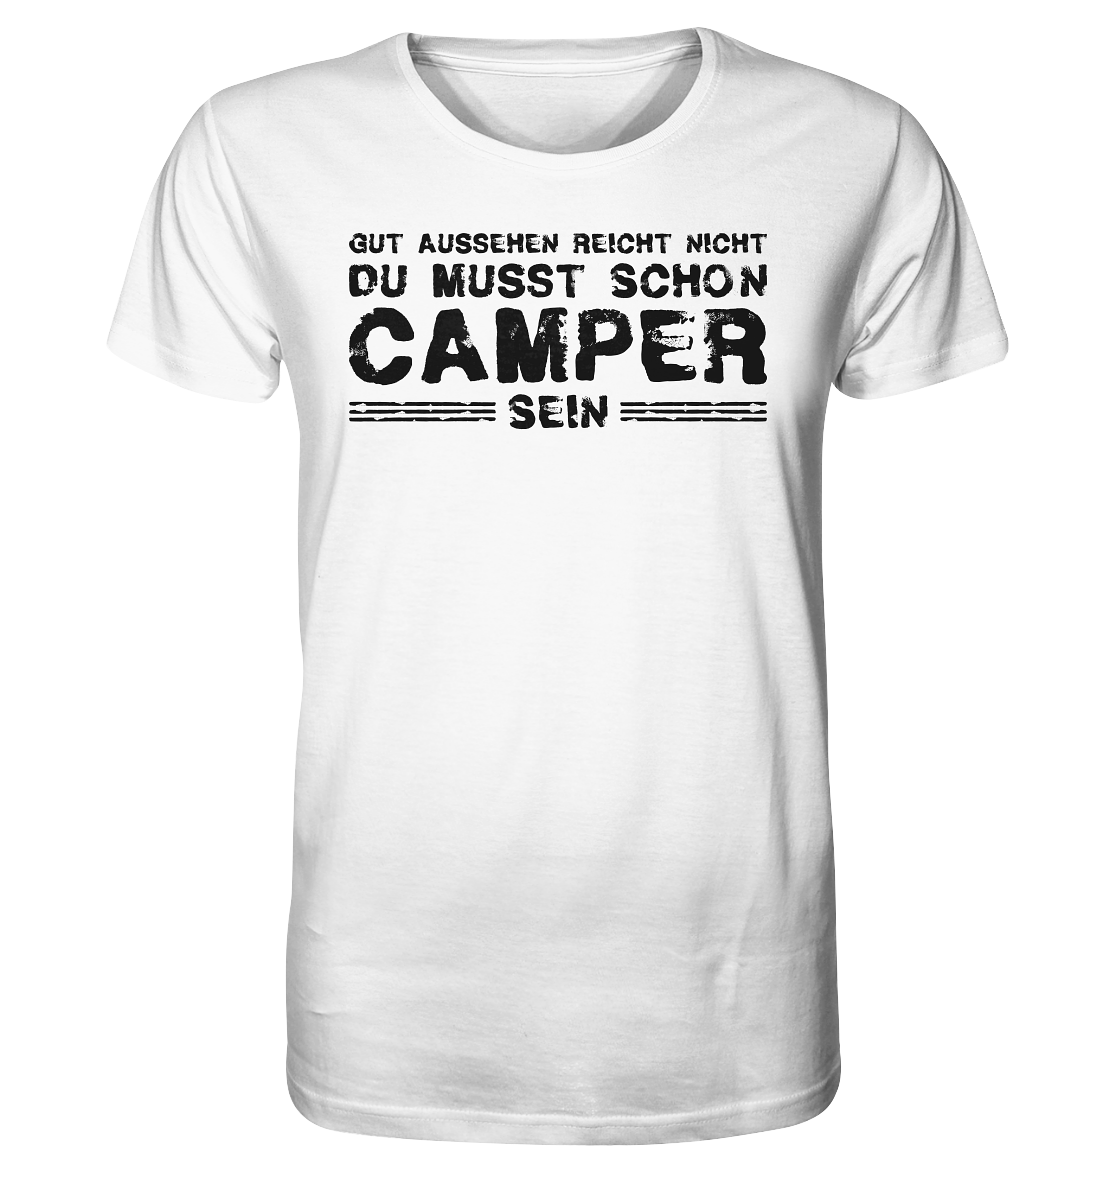 Du musst auch Camper sein - Organic Shirt